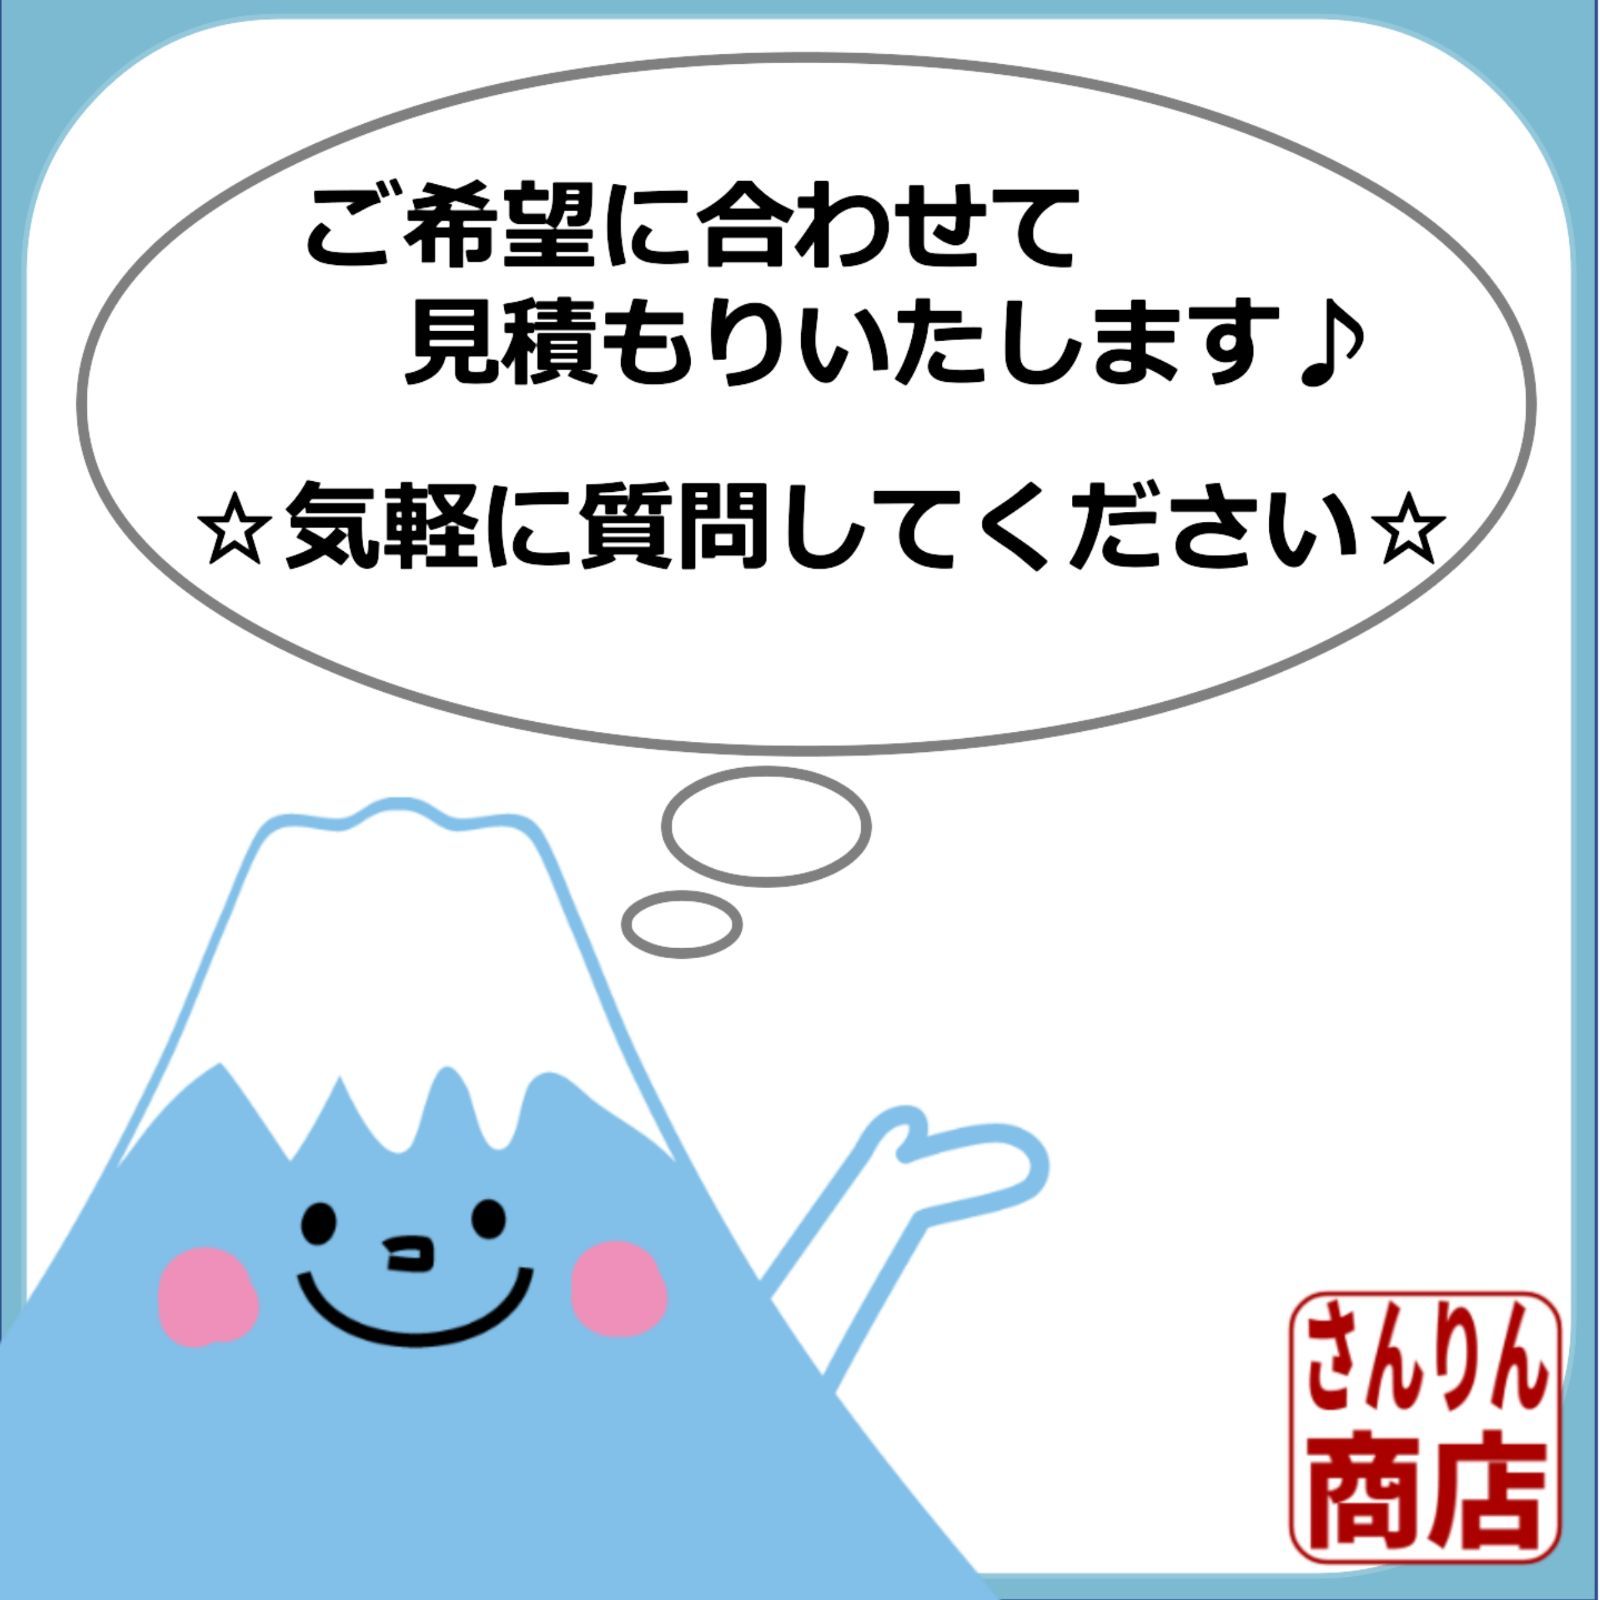 富士山溶岩石 【小粒】 6kg 50-100mm 黒色 アクアリウム 水槽 盆栽